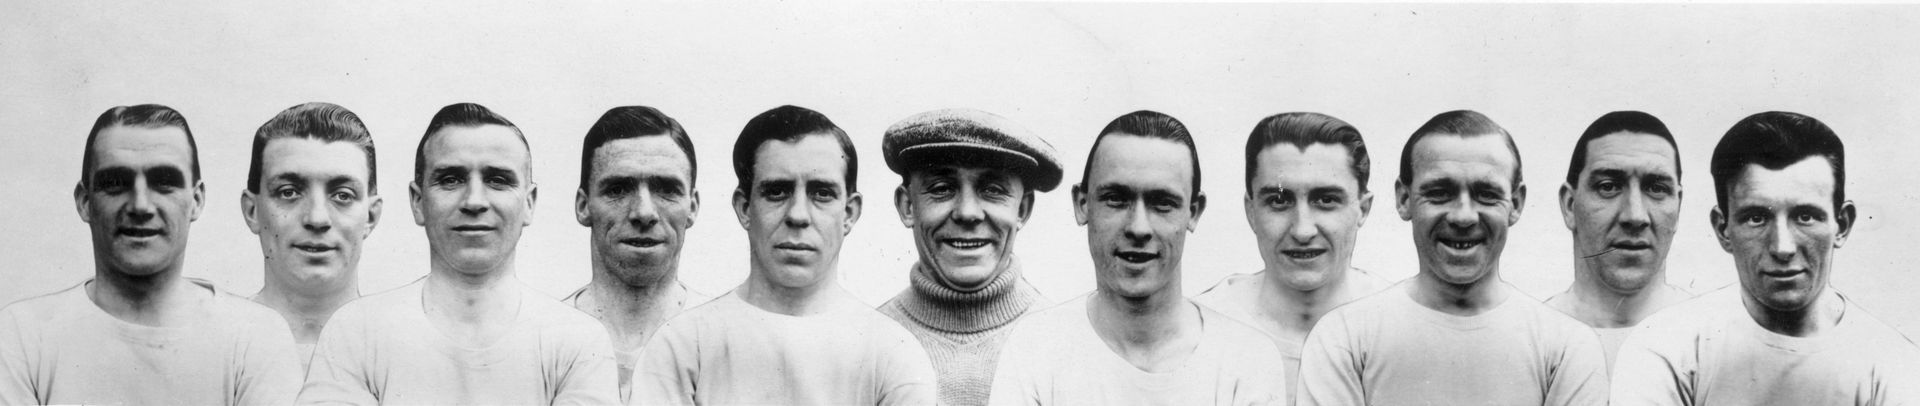 Култовата снимка на играчите на Сити преди финала от 1956 г.